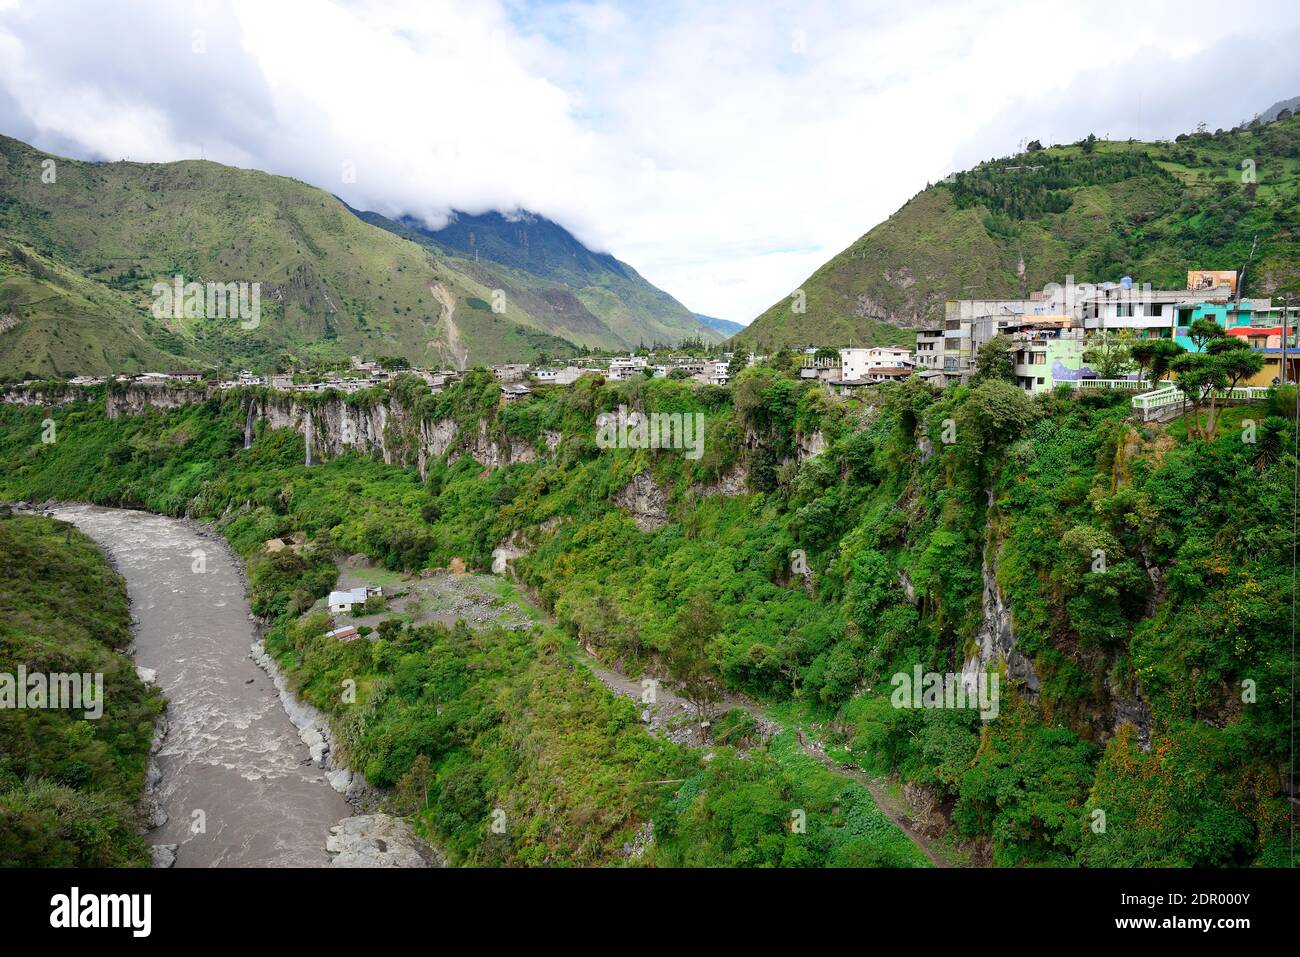 Rio Pastaza river valley, Banos de Agua Santa, Tungurahua province, Ecuador Stock Photo